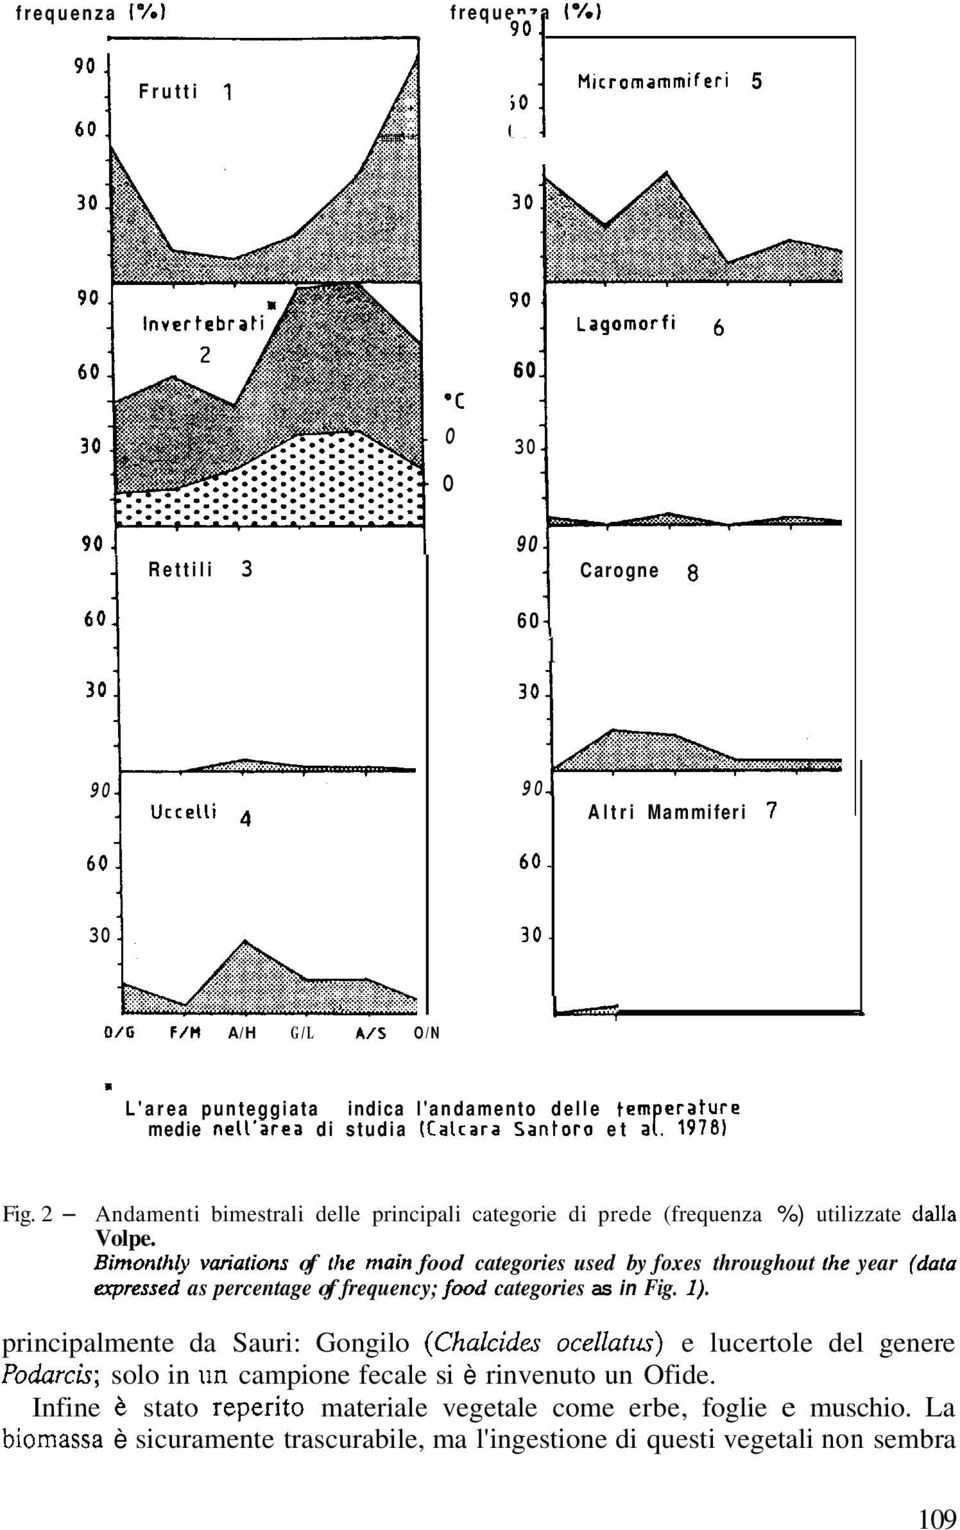 1978) Fig. 2 - Andamenti bimestrali delle principali categorie di prede (frequenza %) utilizzate daila Volpe.